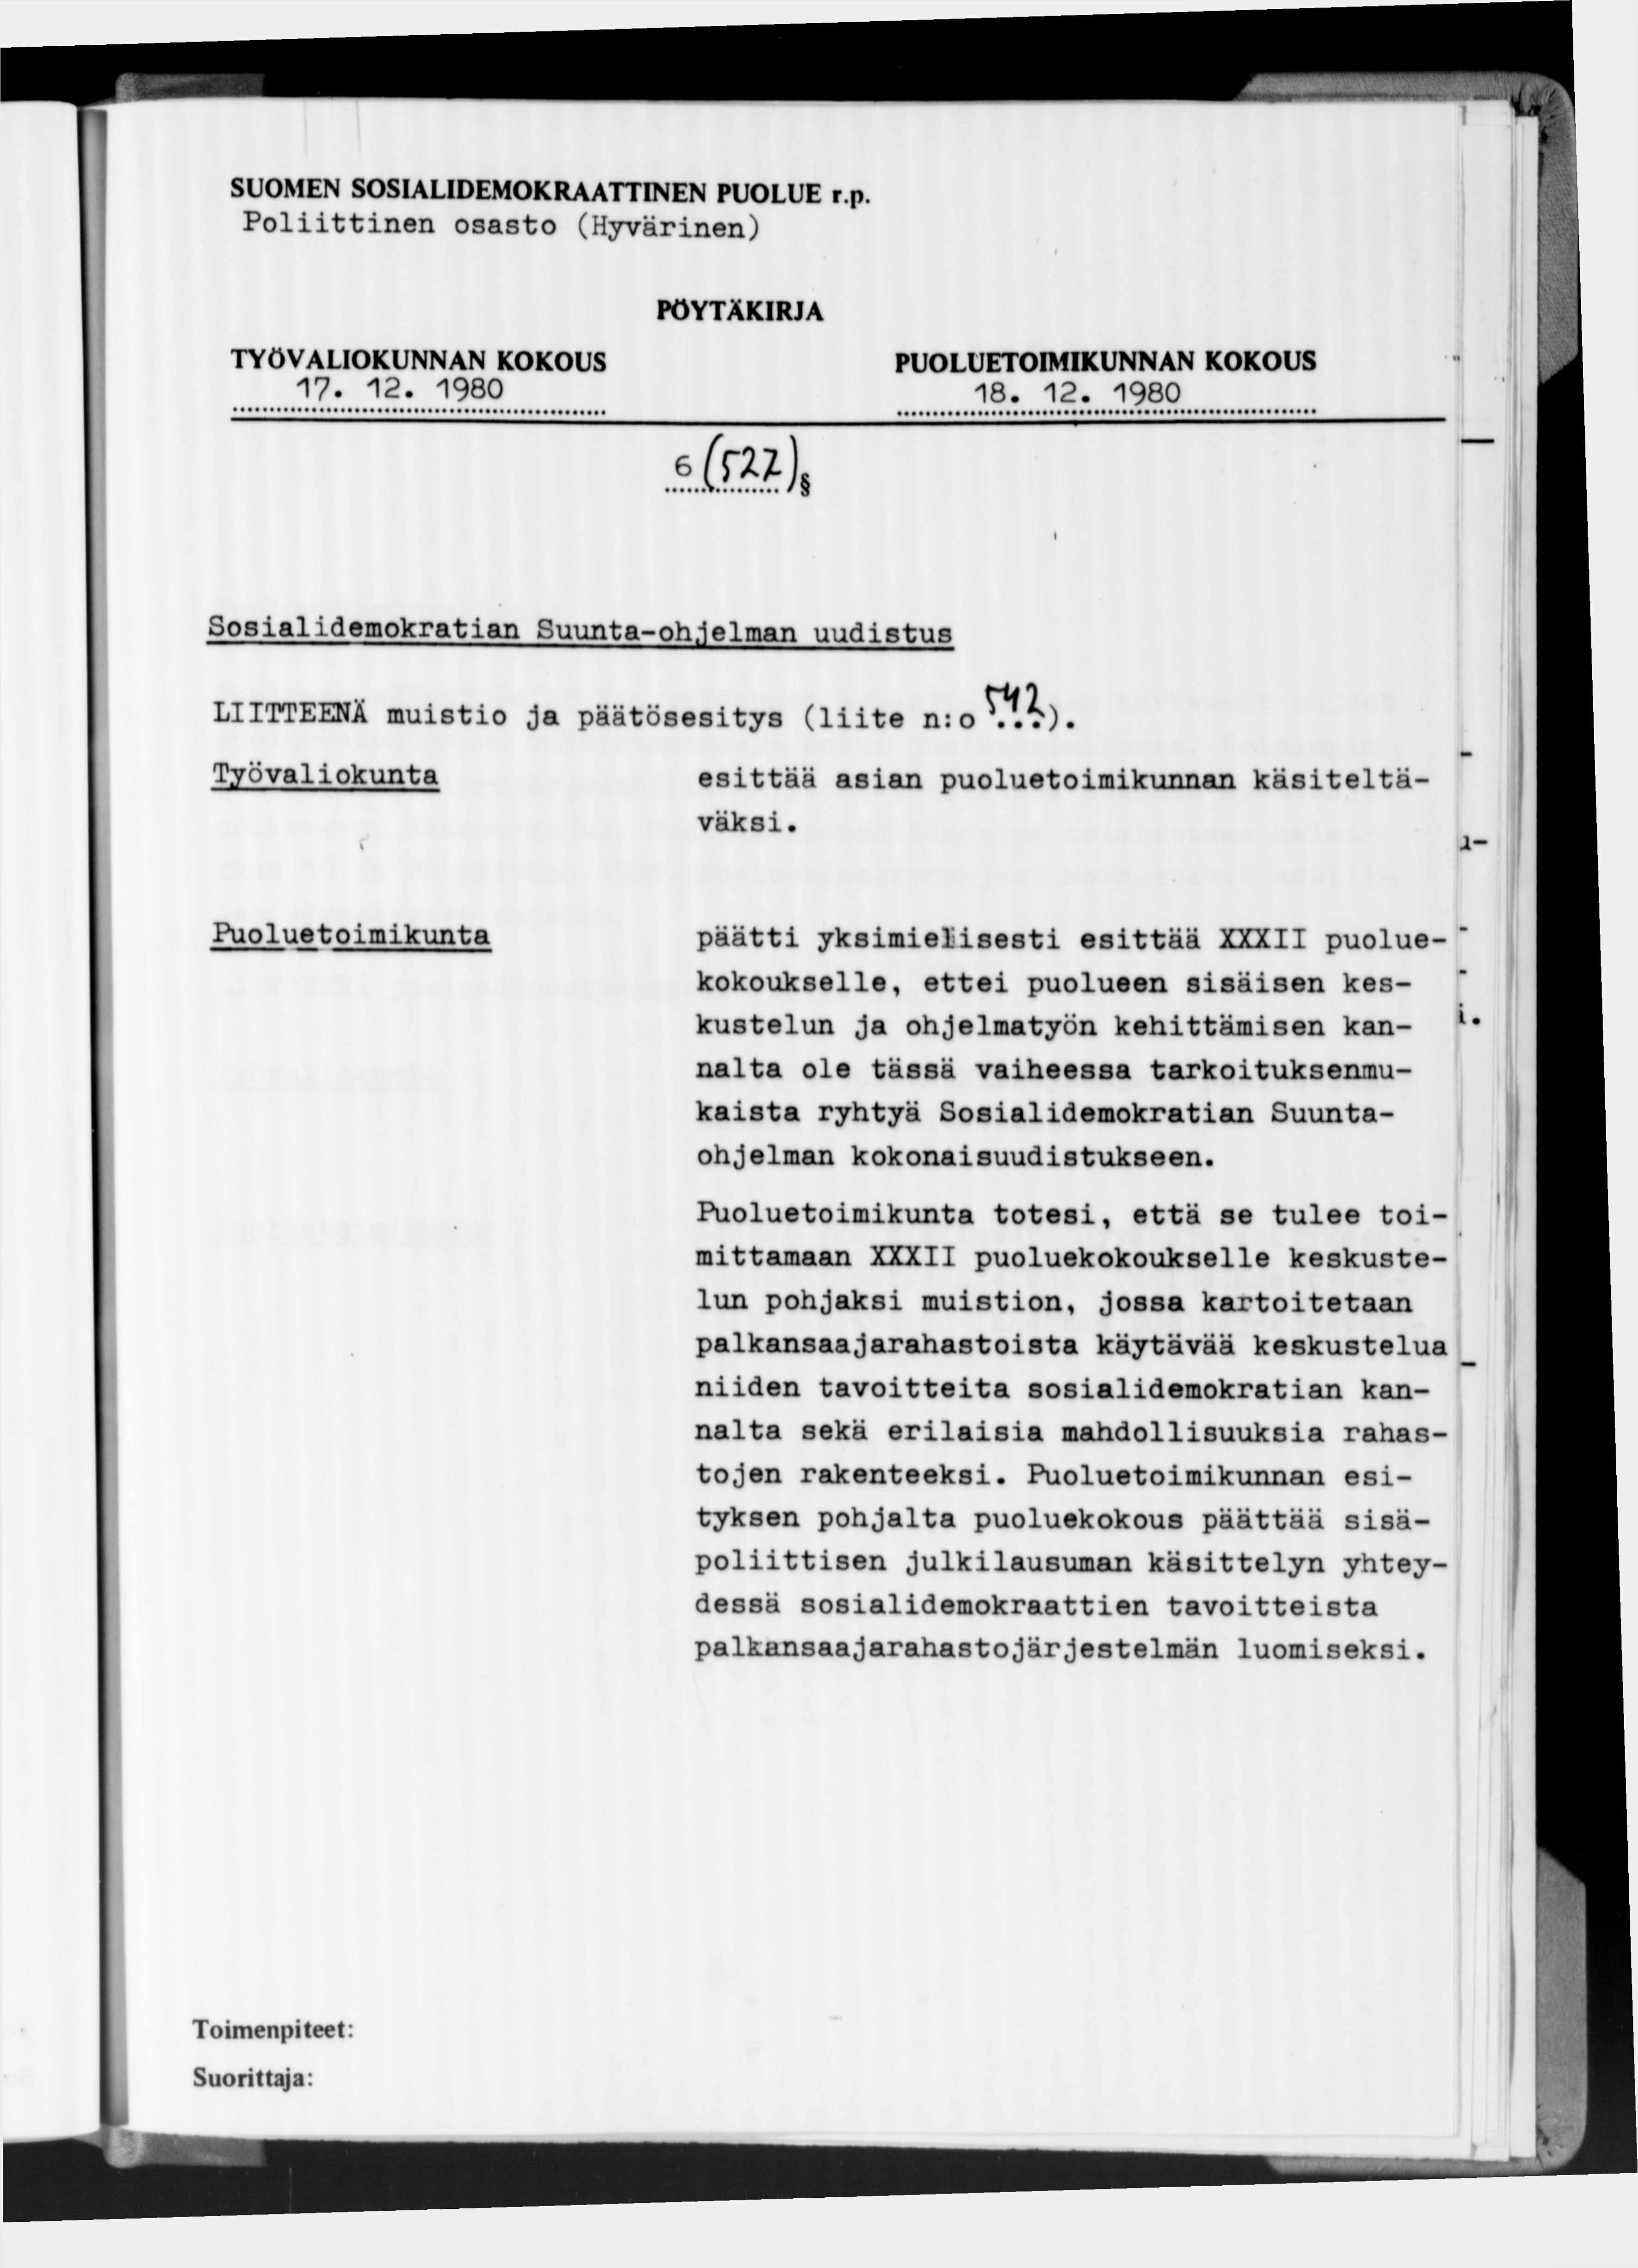 SUOMEN SOSIALIDEMOKRAATTINEN PUOLUE r.p. Poliittinen osasto (Hyvärinen) 17-12. 1980 18. 12. 1980 (ml >.